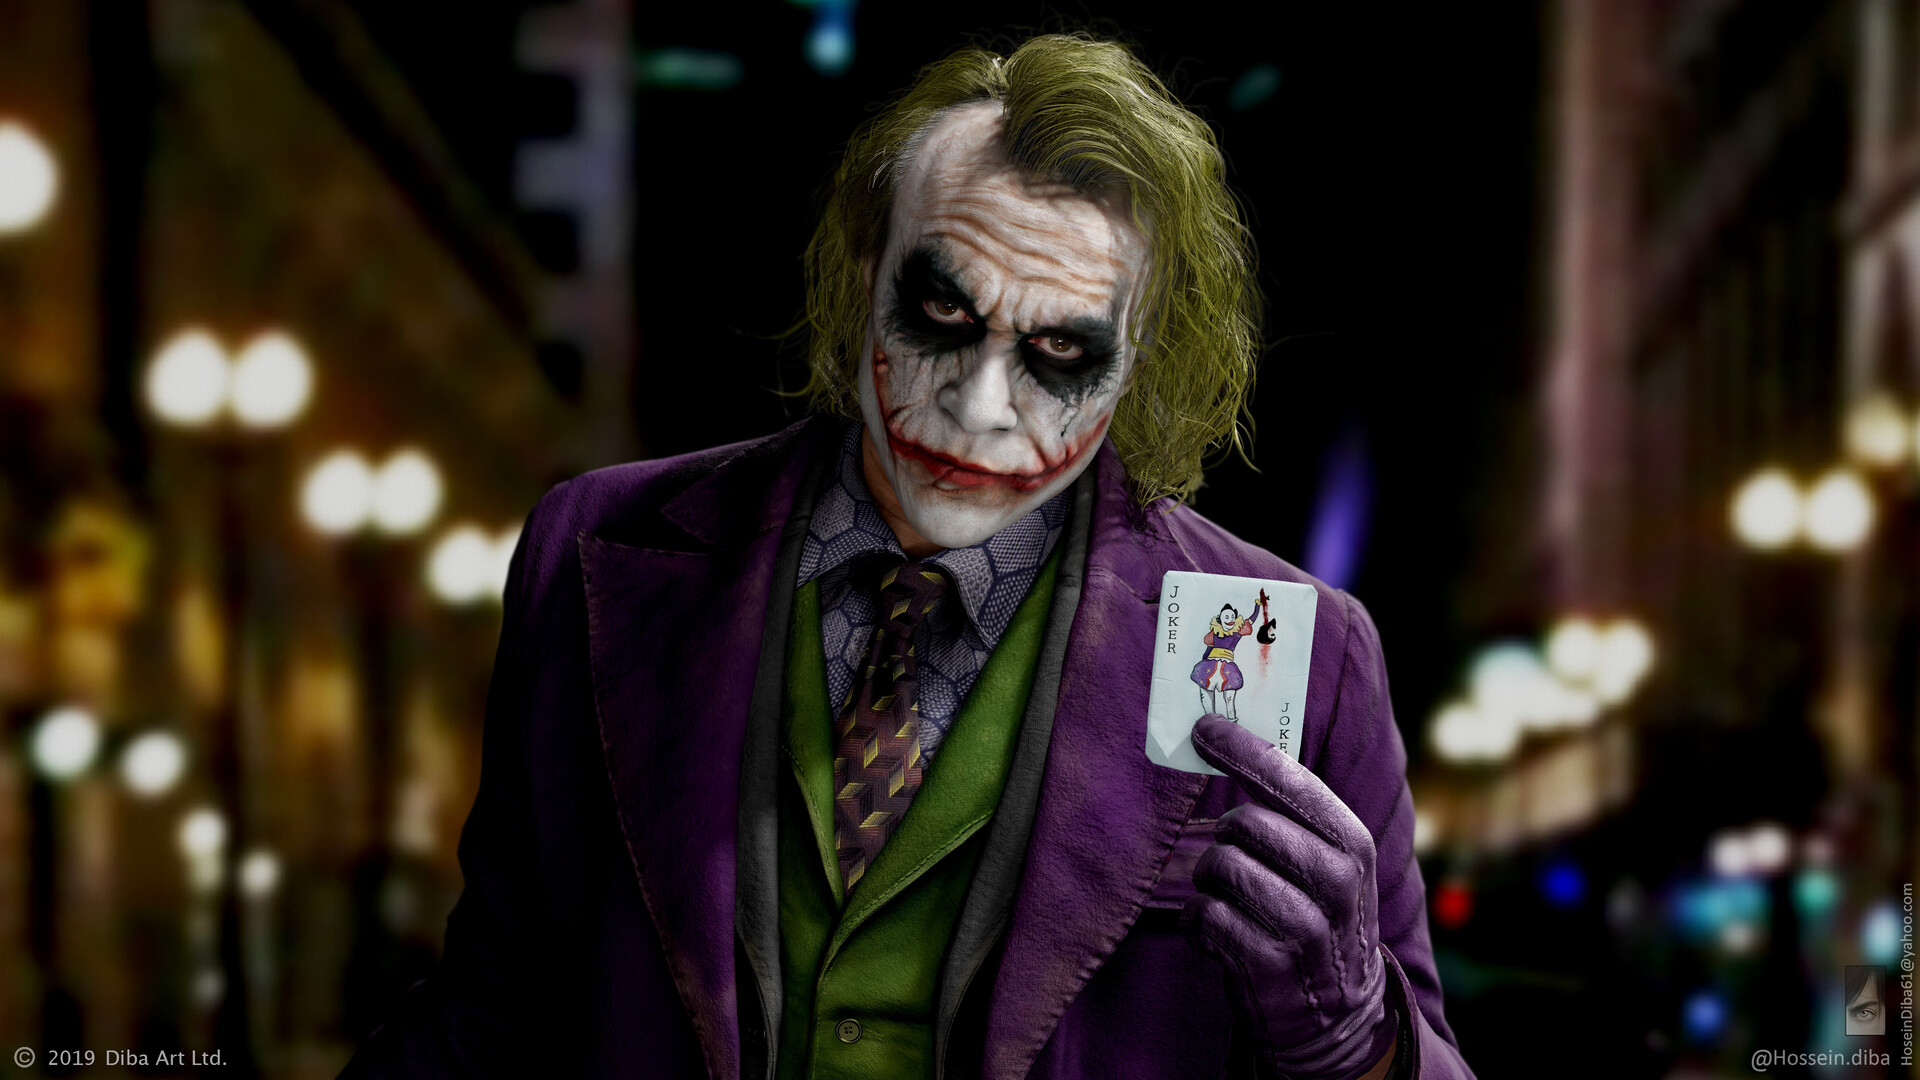 Hossein Diba - Joker (Heath Ledger) _ Real time